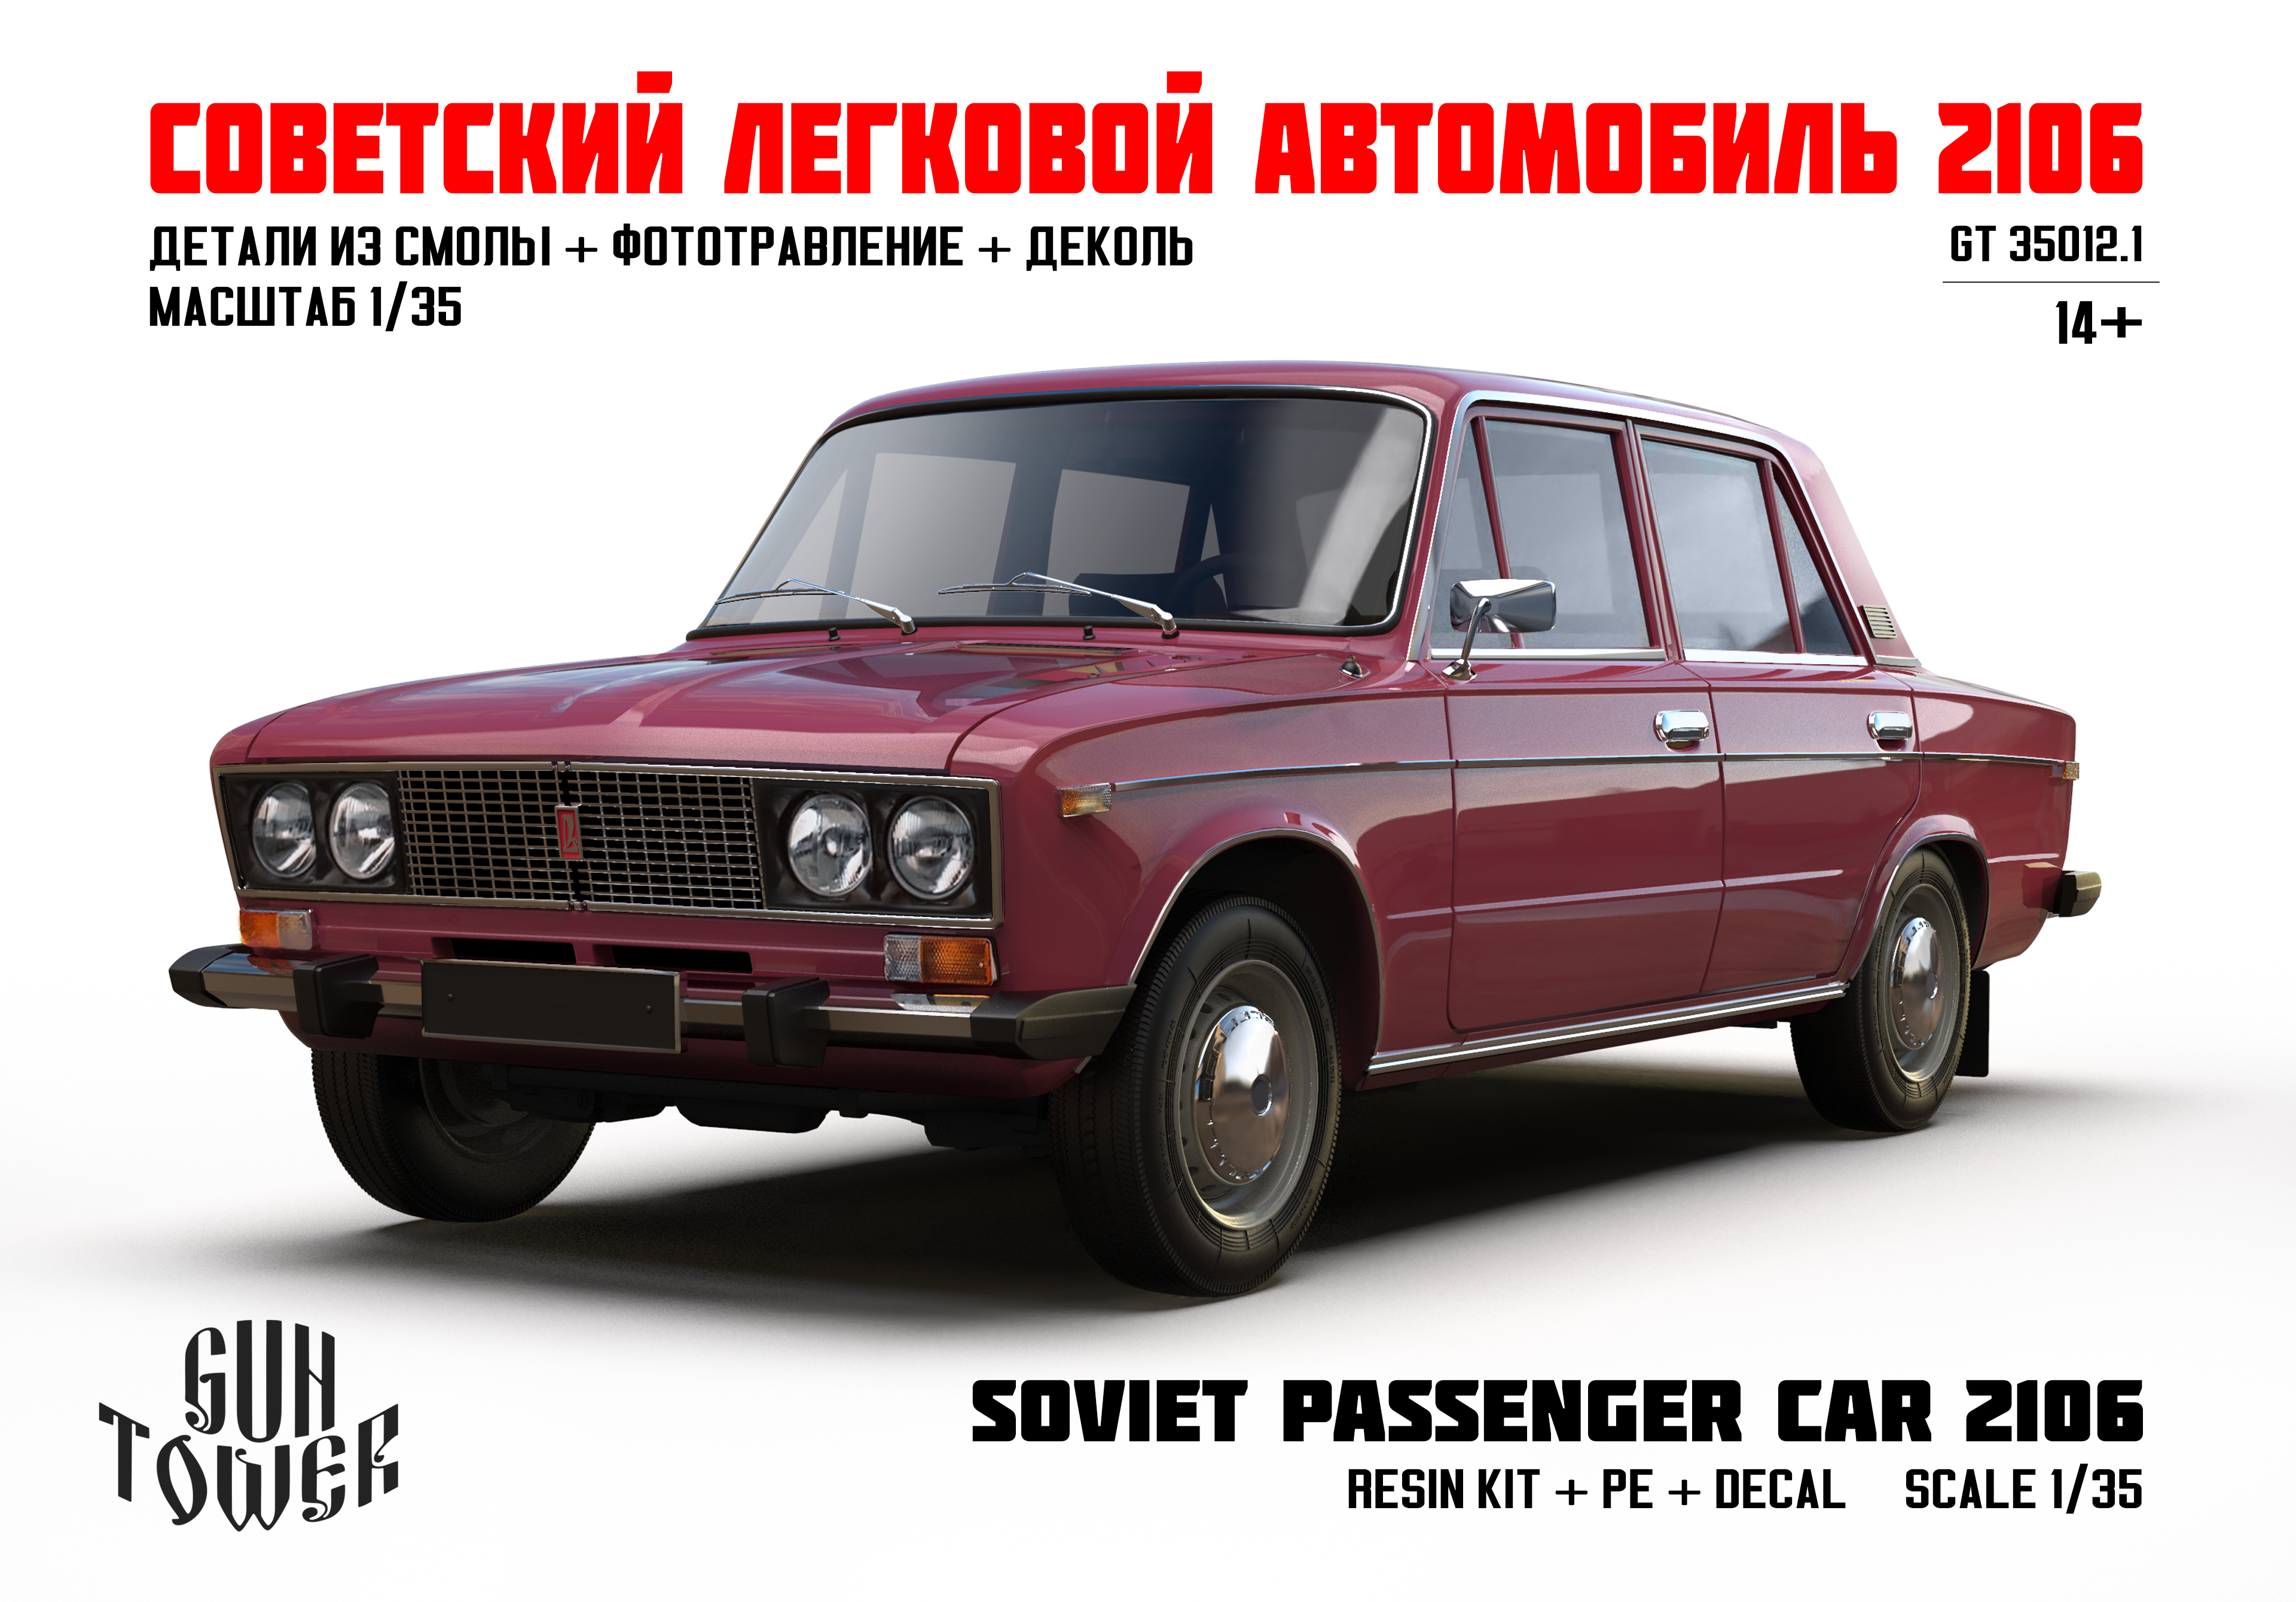 GT 35012.1 Советский легковой автомобиль 2106